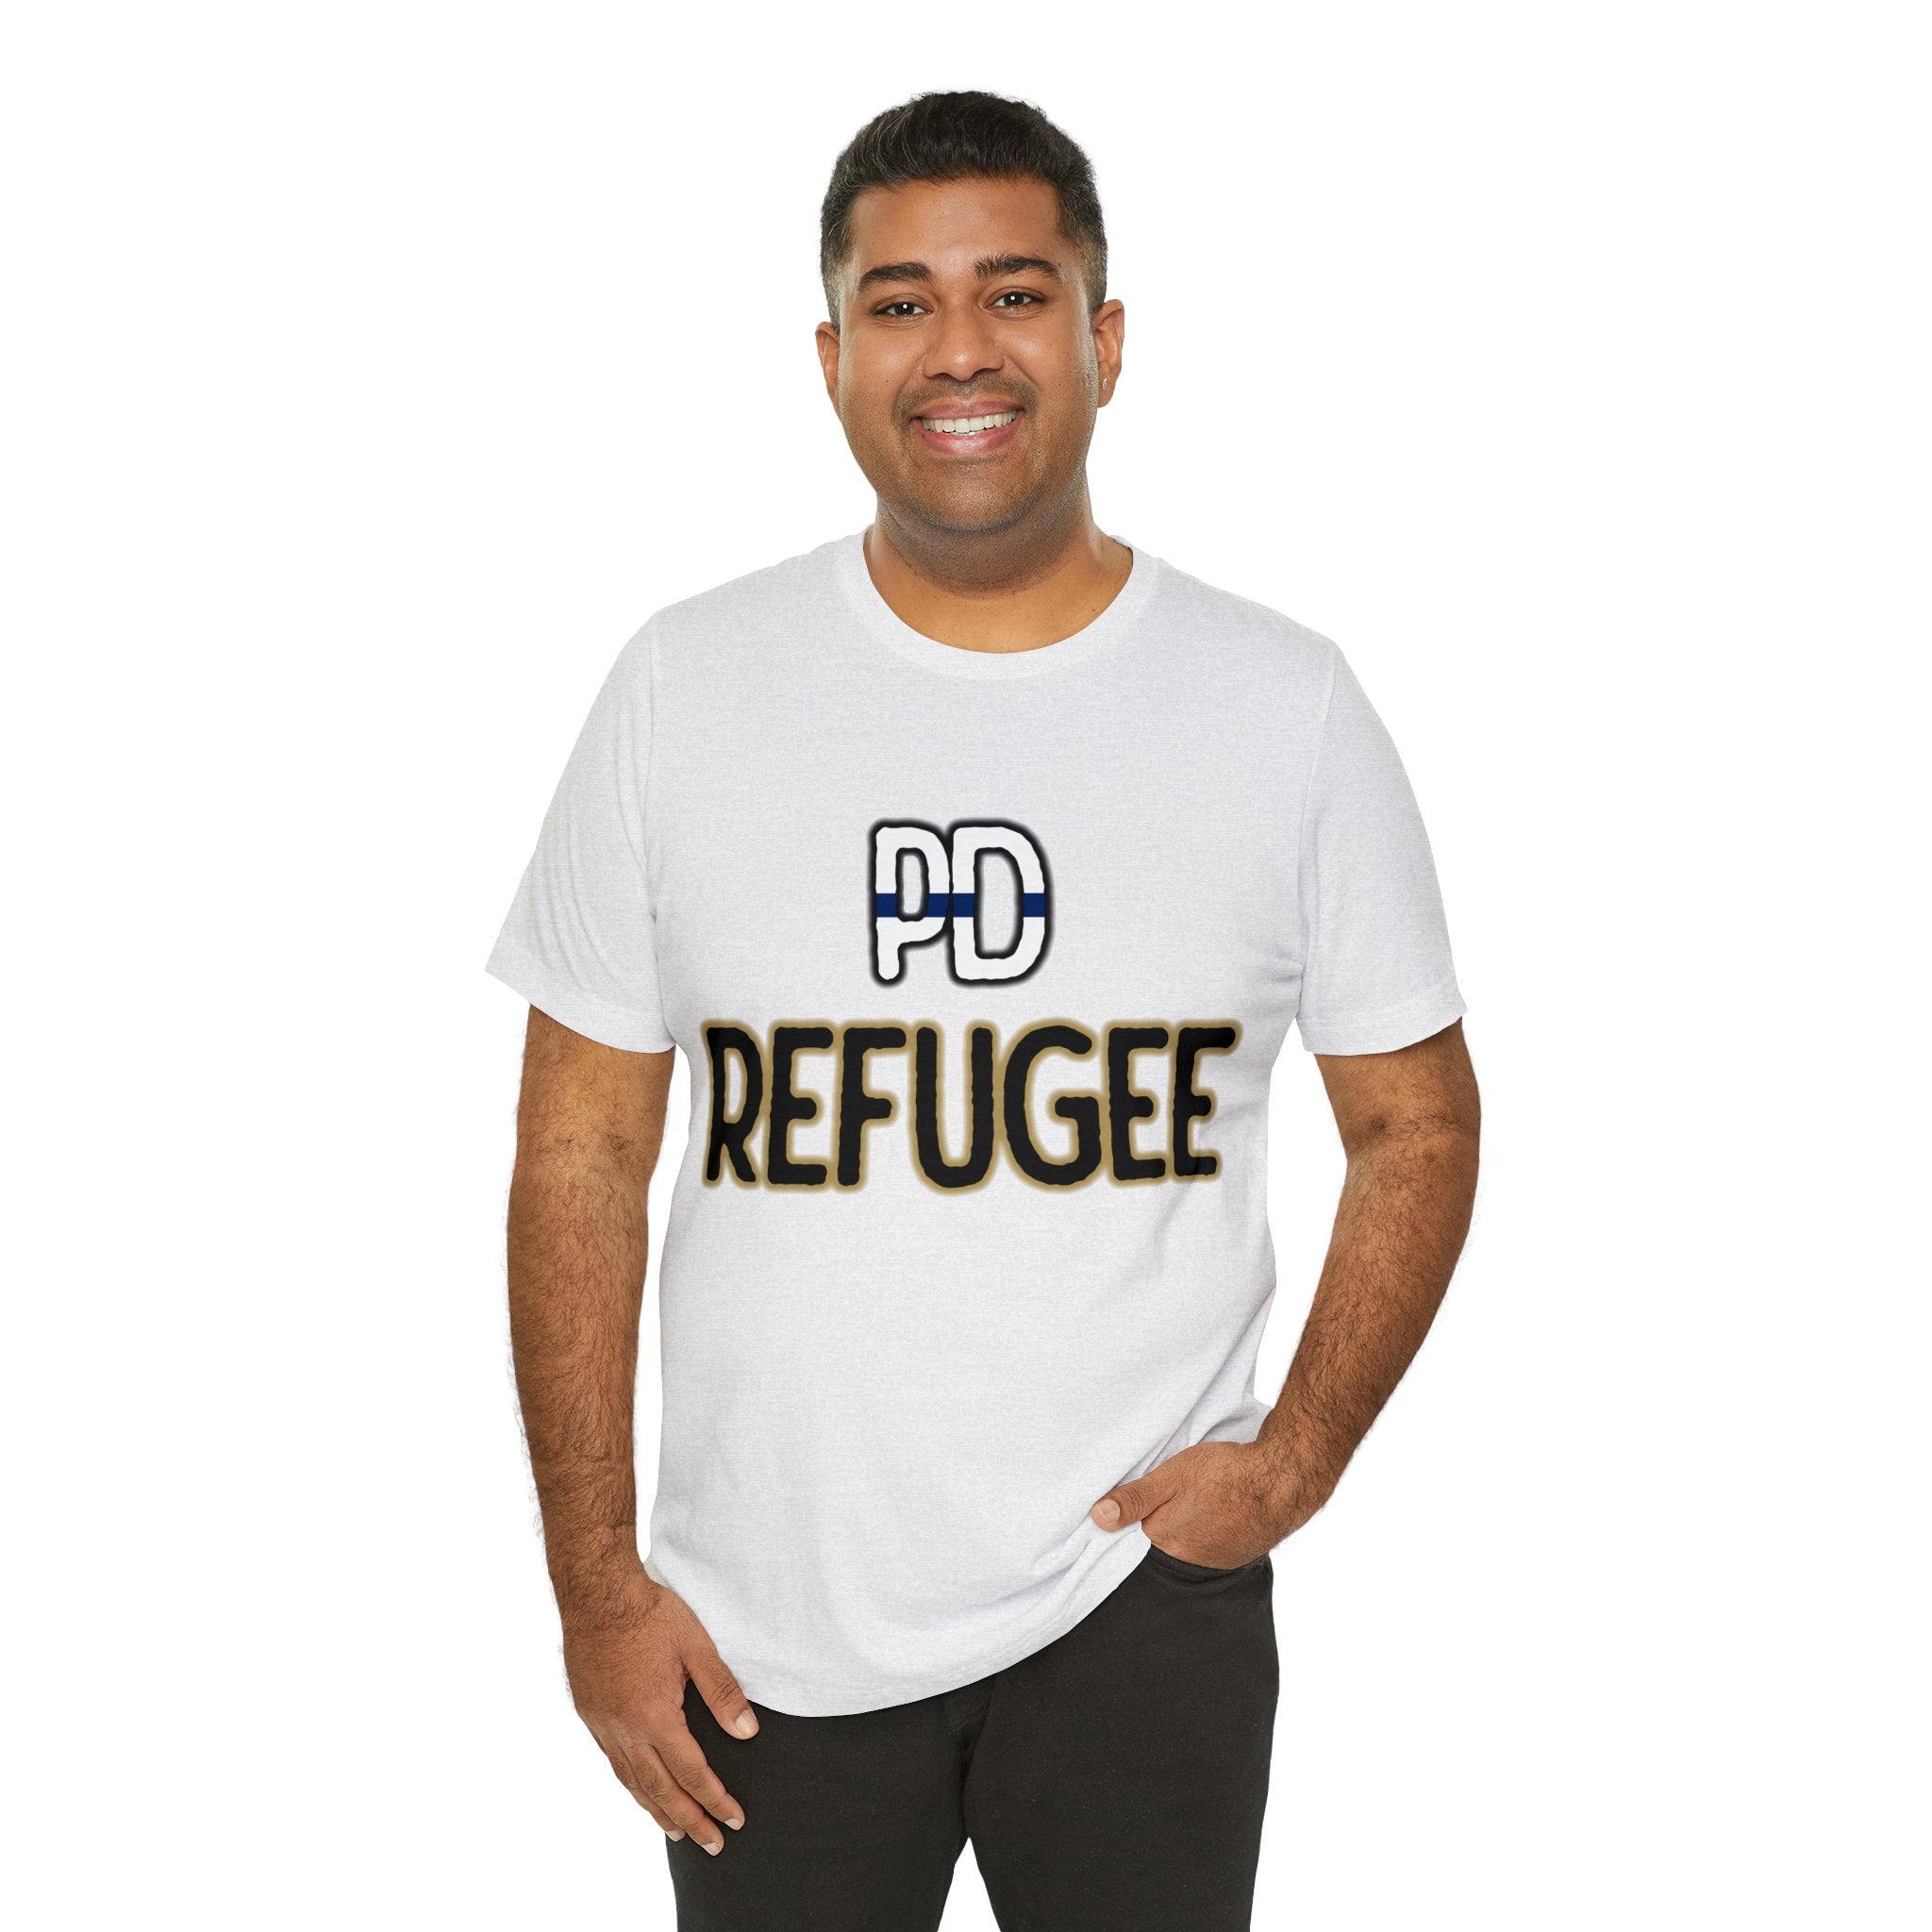 PD Refugee Tee